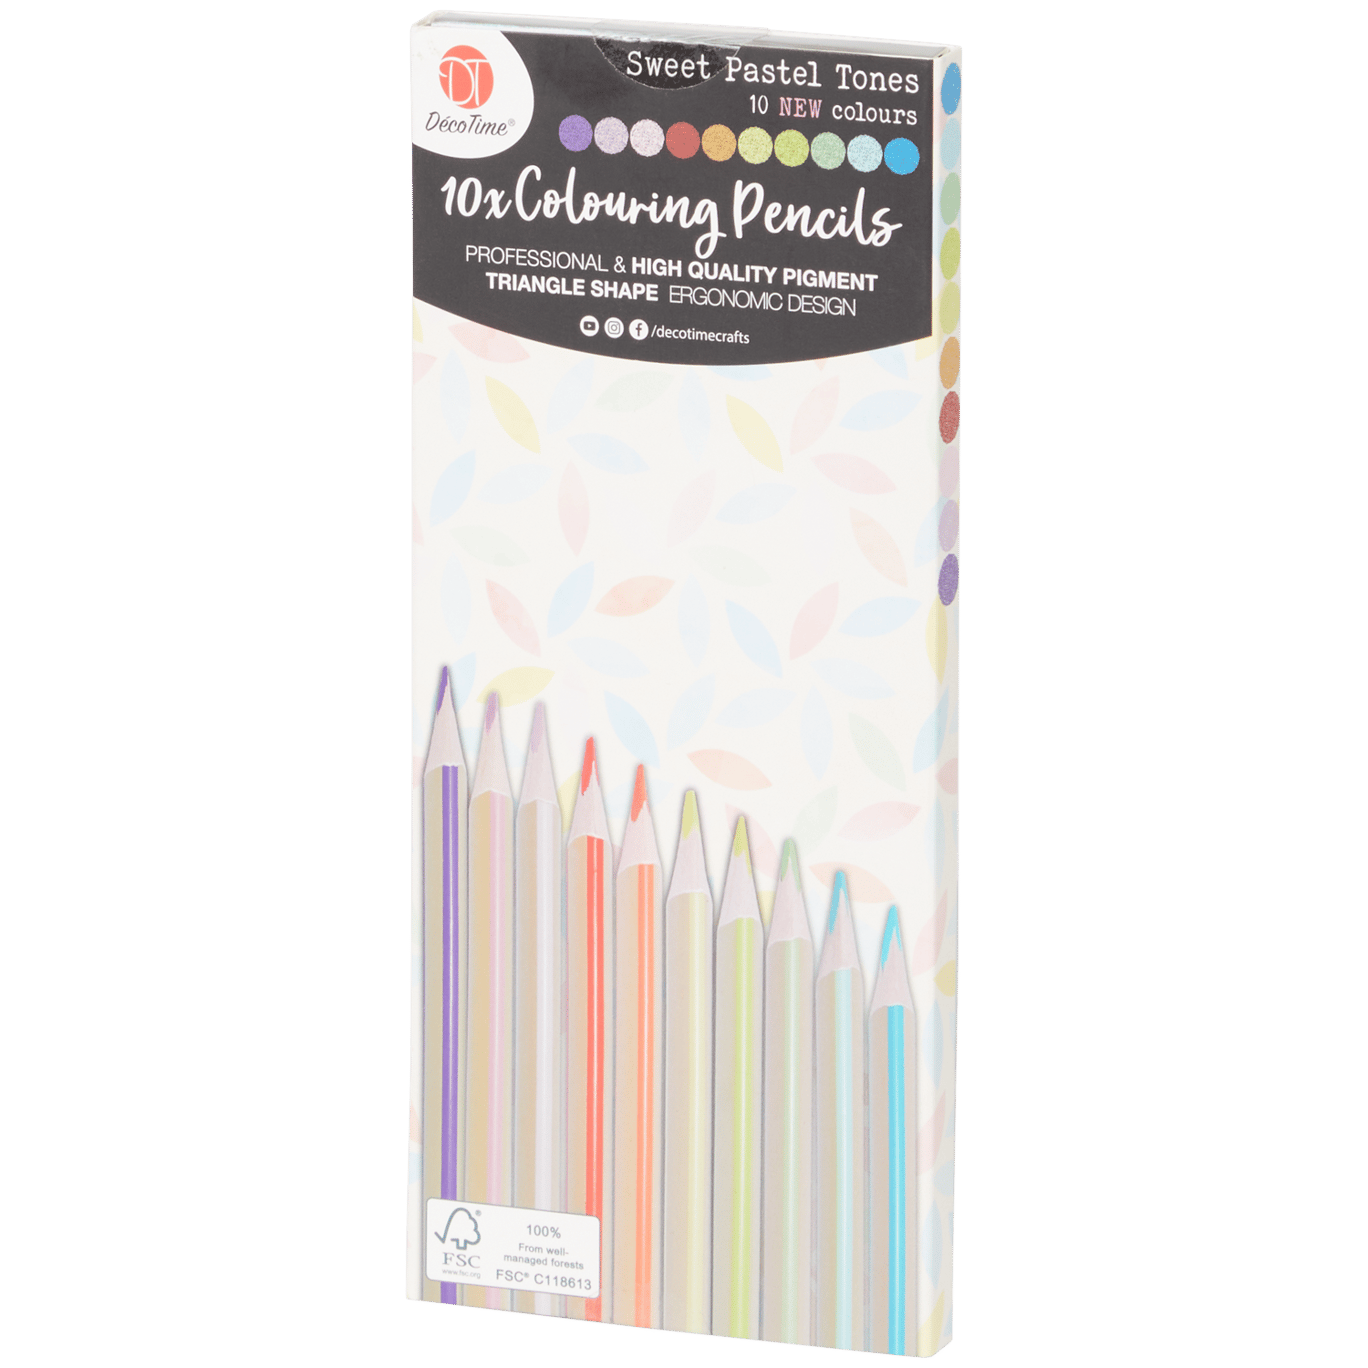 220 crayons de couleur DécoTime à petit prix